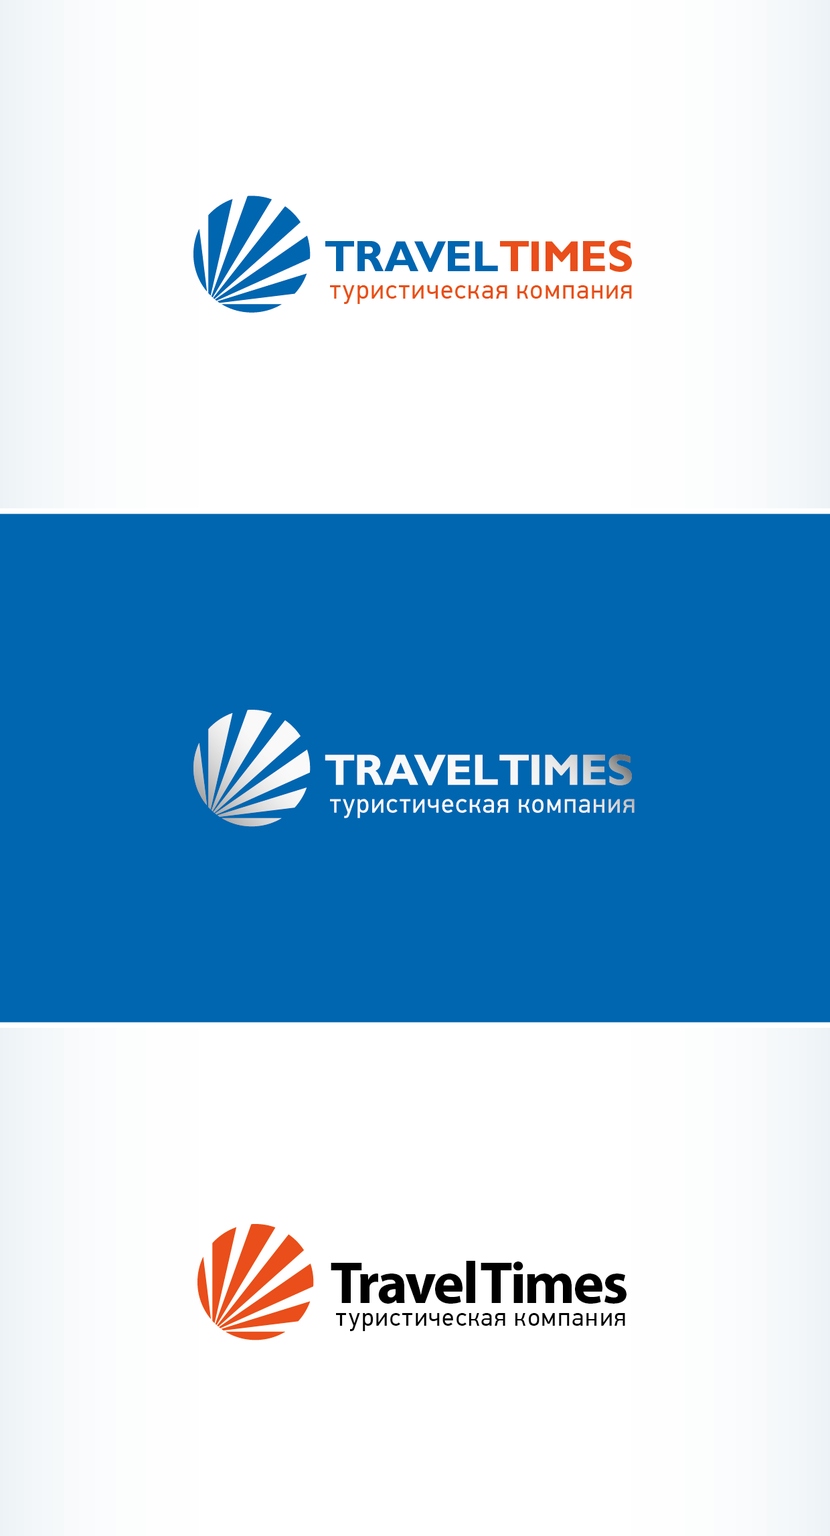 08 - Создание логотипа для туристической компании (розничная сеть).